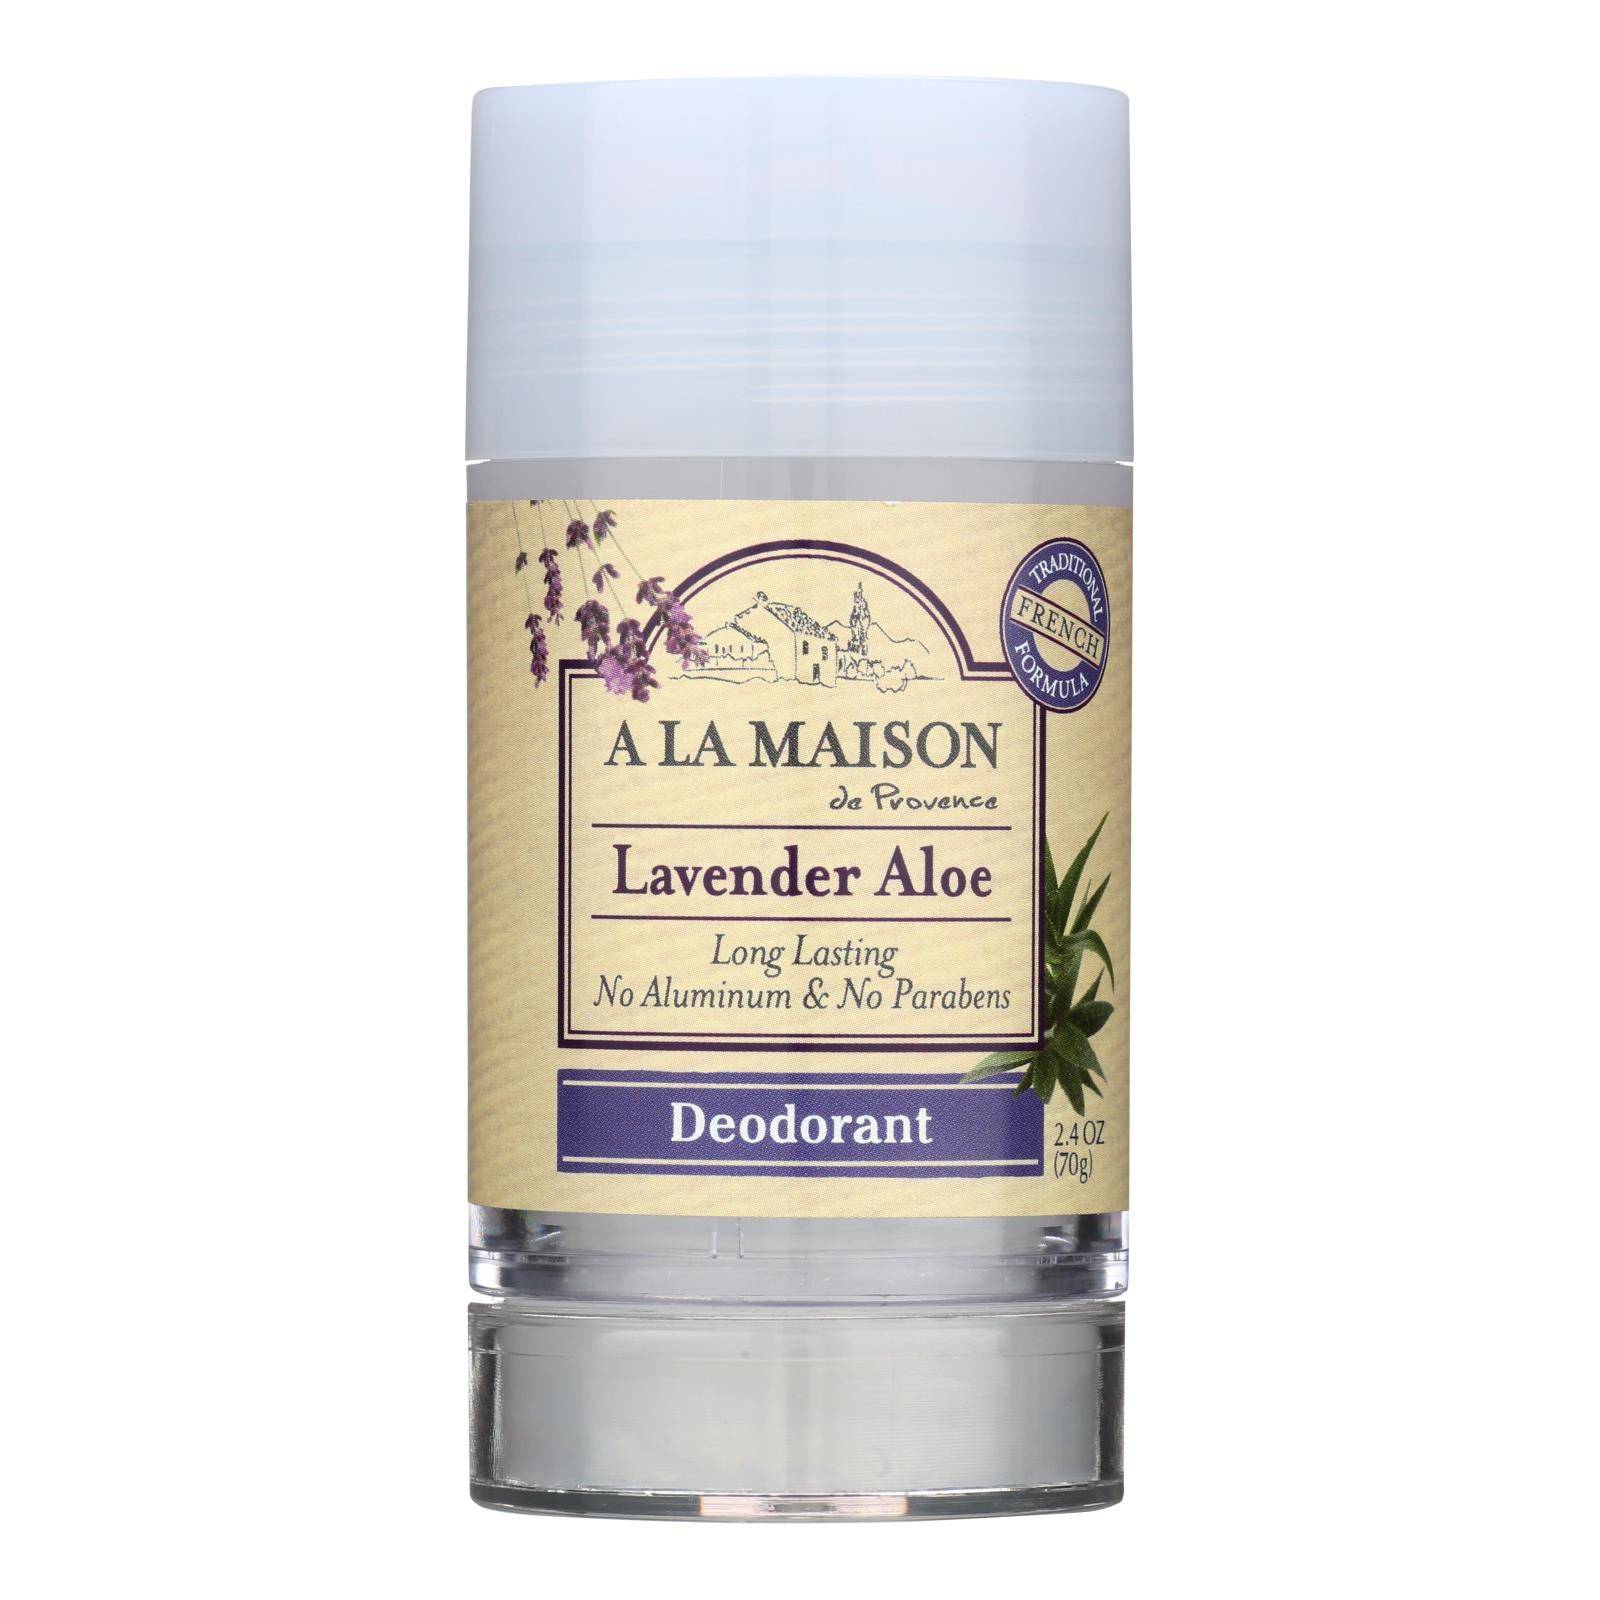 A La Maison - Deodorant - Lavender - 2.4 Oz | OnlyNaturals.us